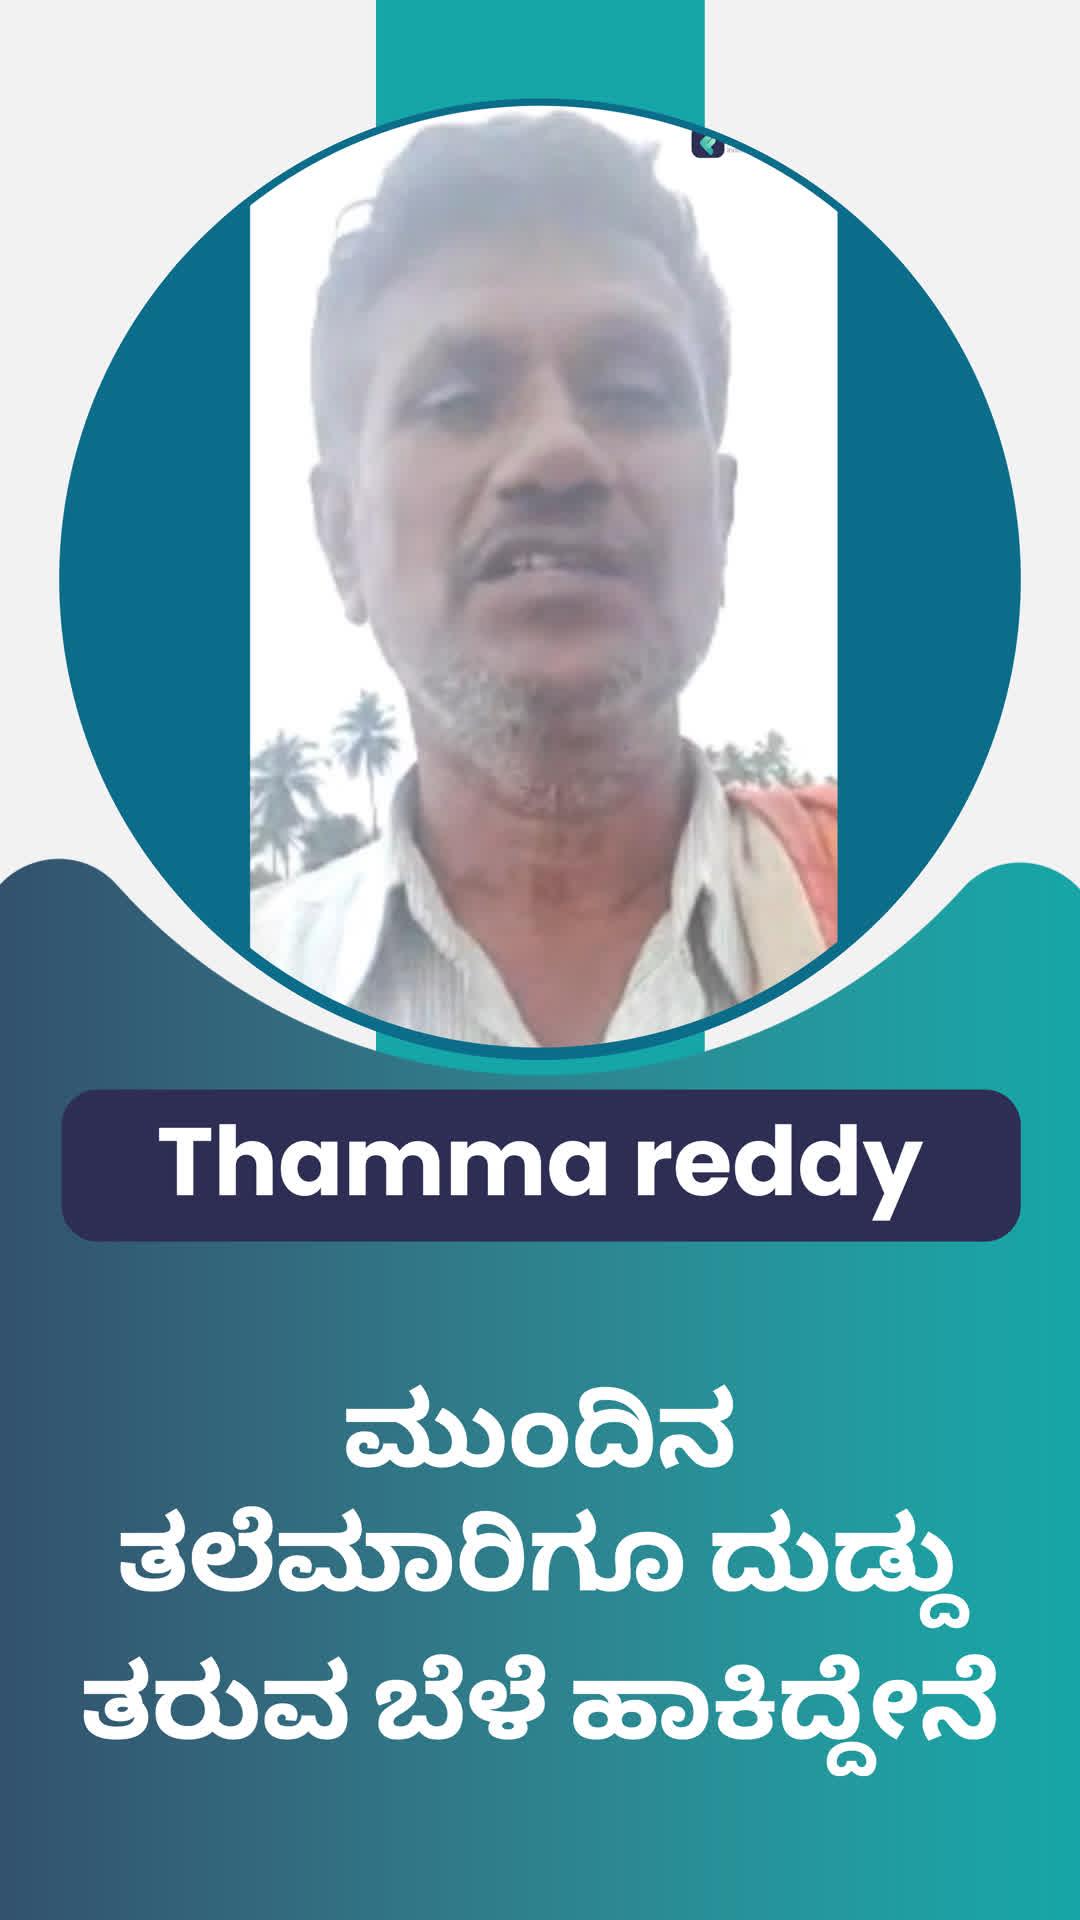 Thamma reddy k's Honest Review of ffreedom app - Kolar ,Karnataka